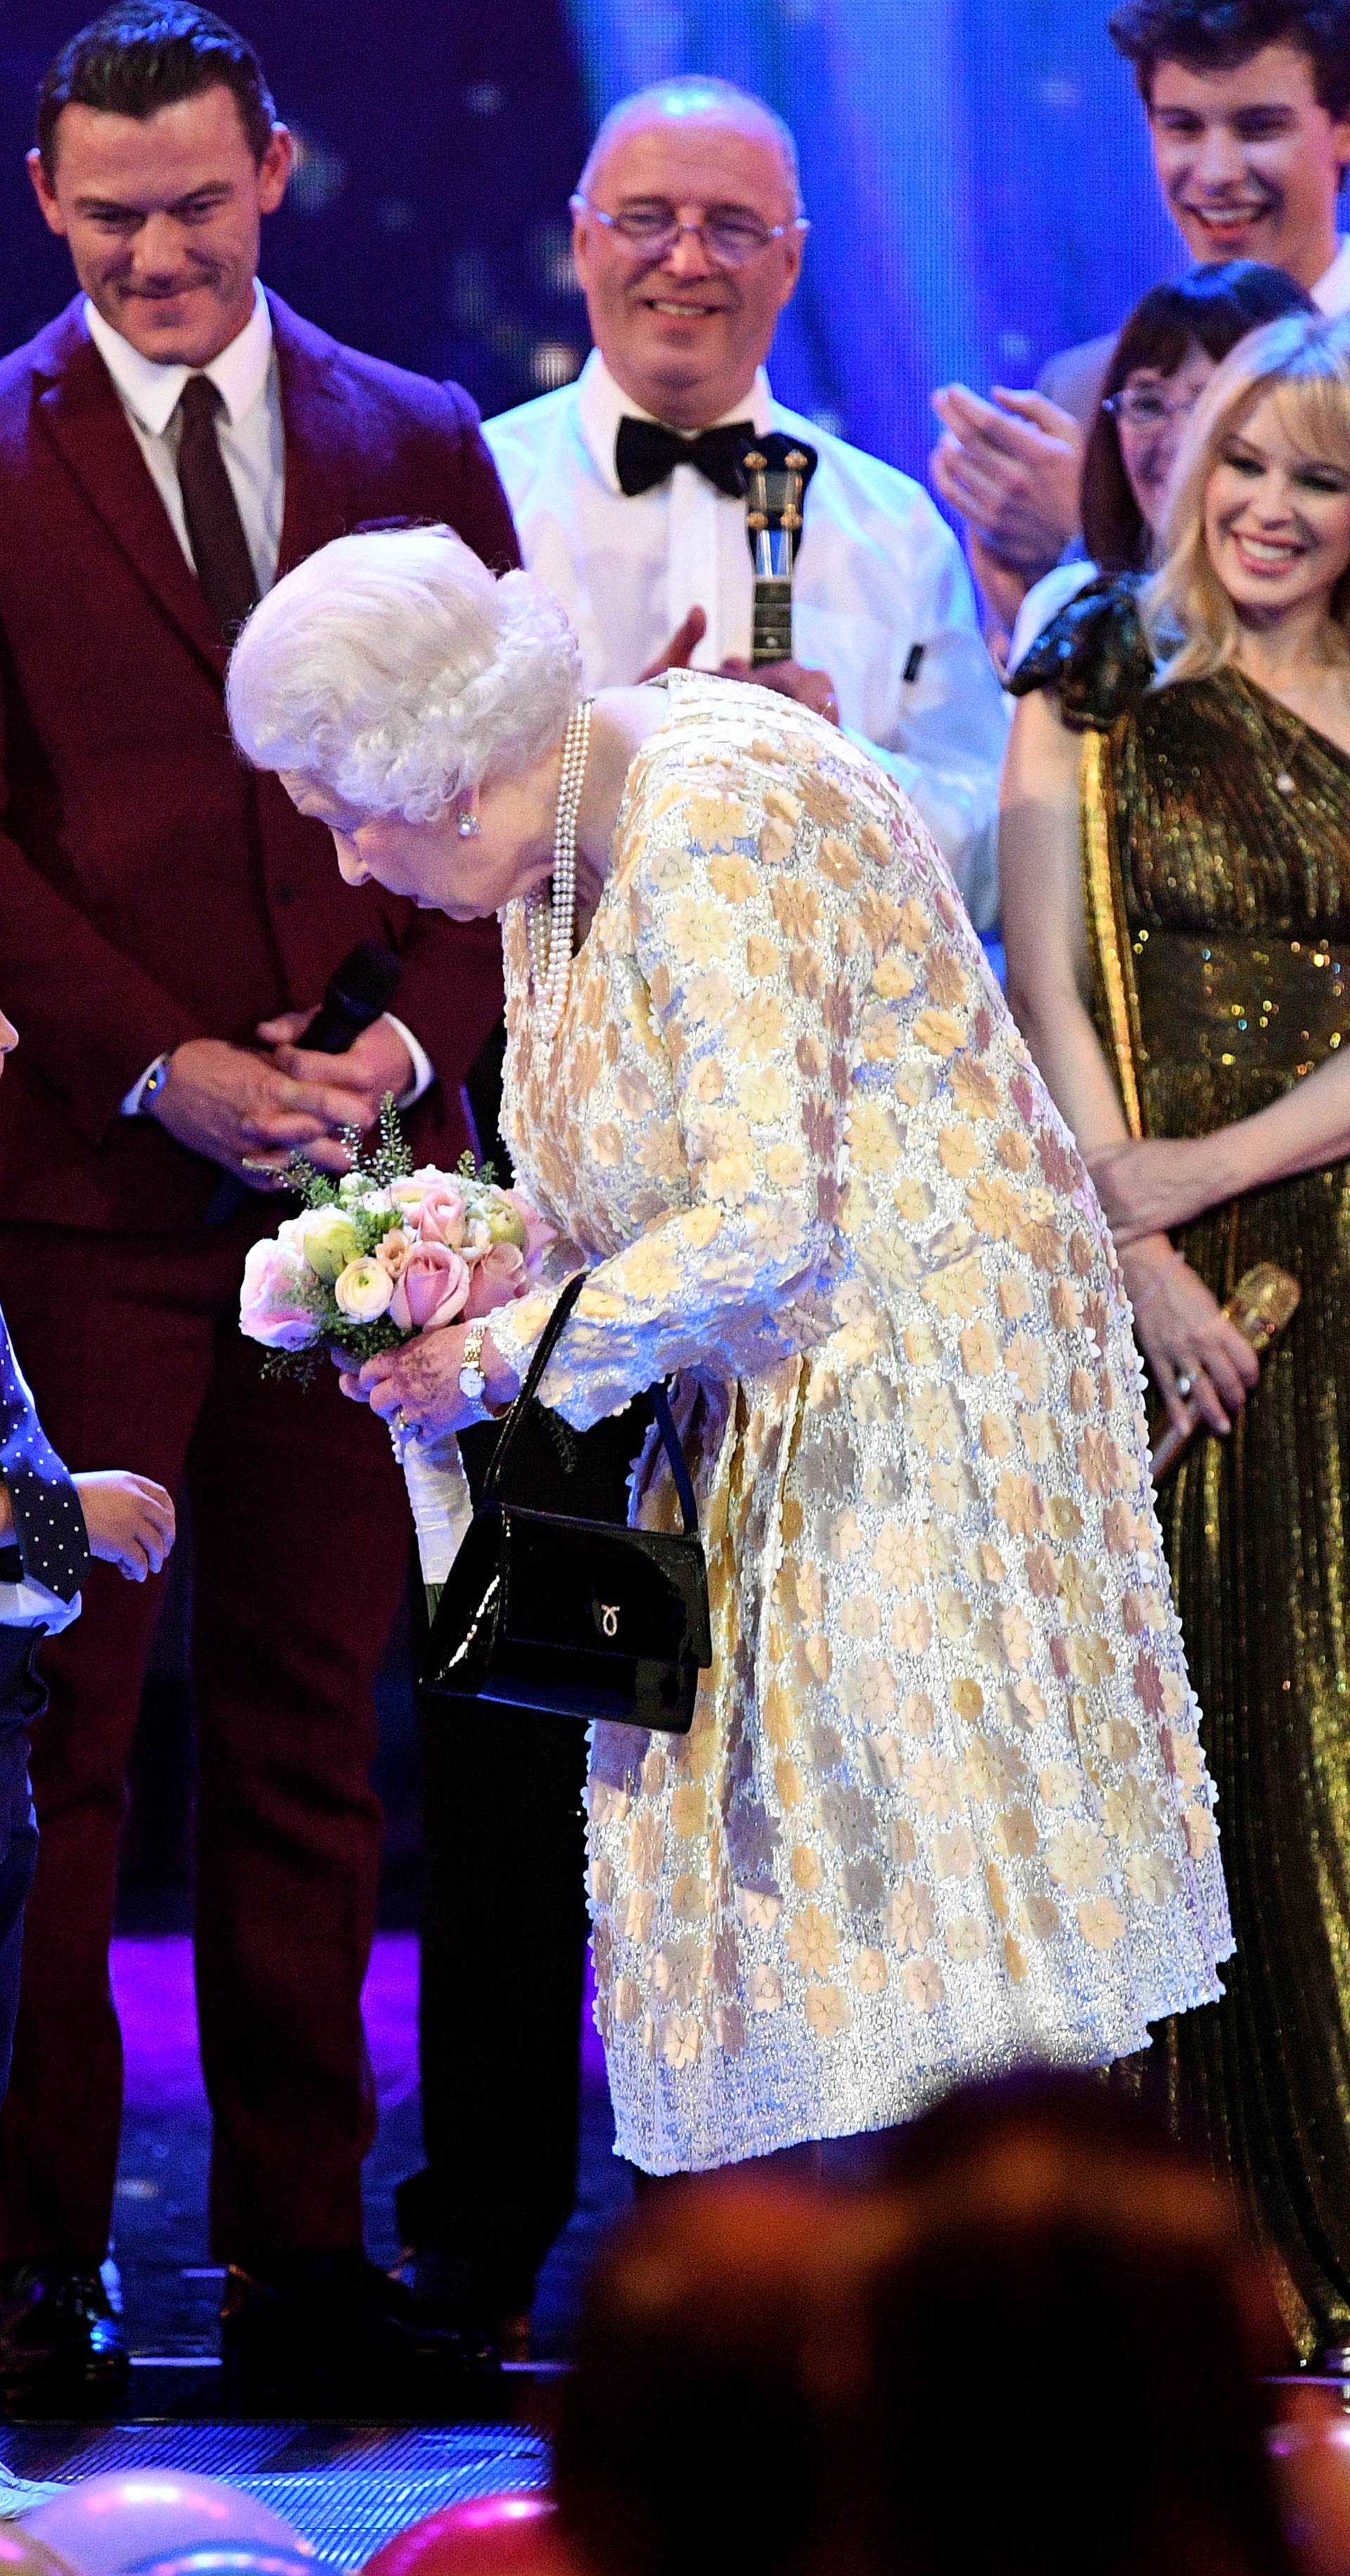 Queen Elizabeth II 92nd birthday